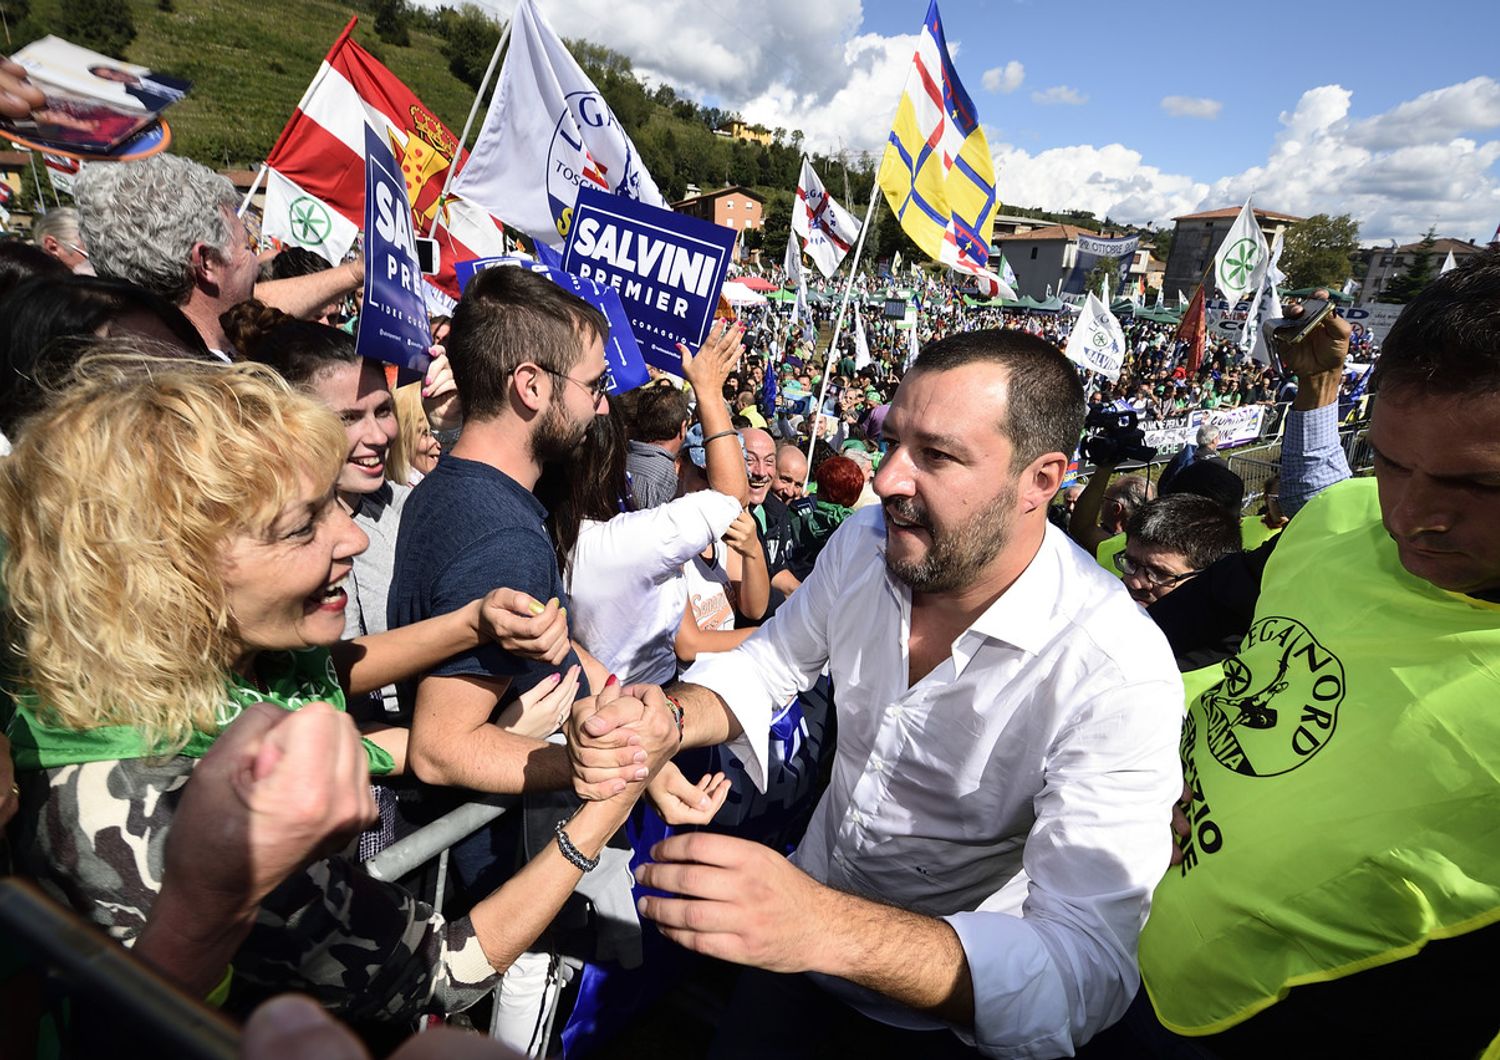 Il discorso con cui Salvini si &egrave; candidato premier&nbsp;